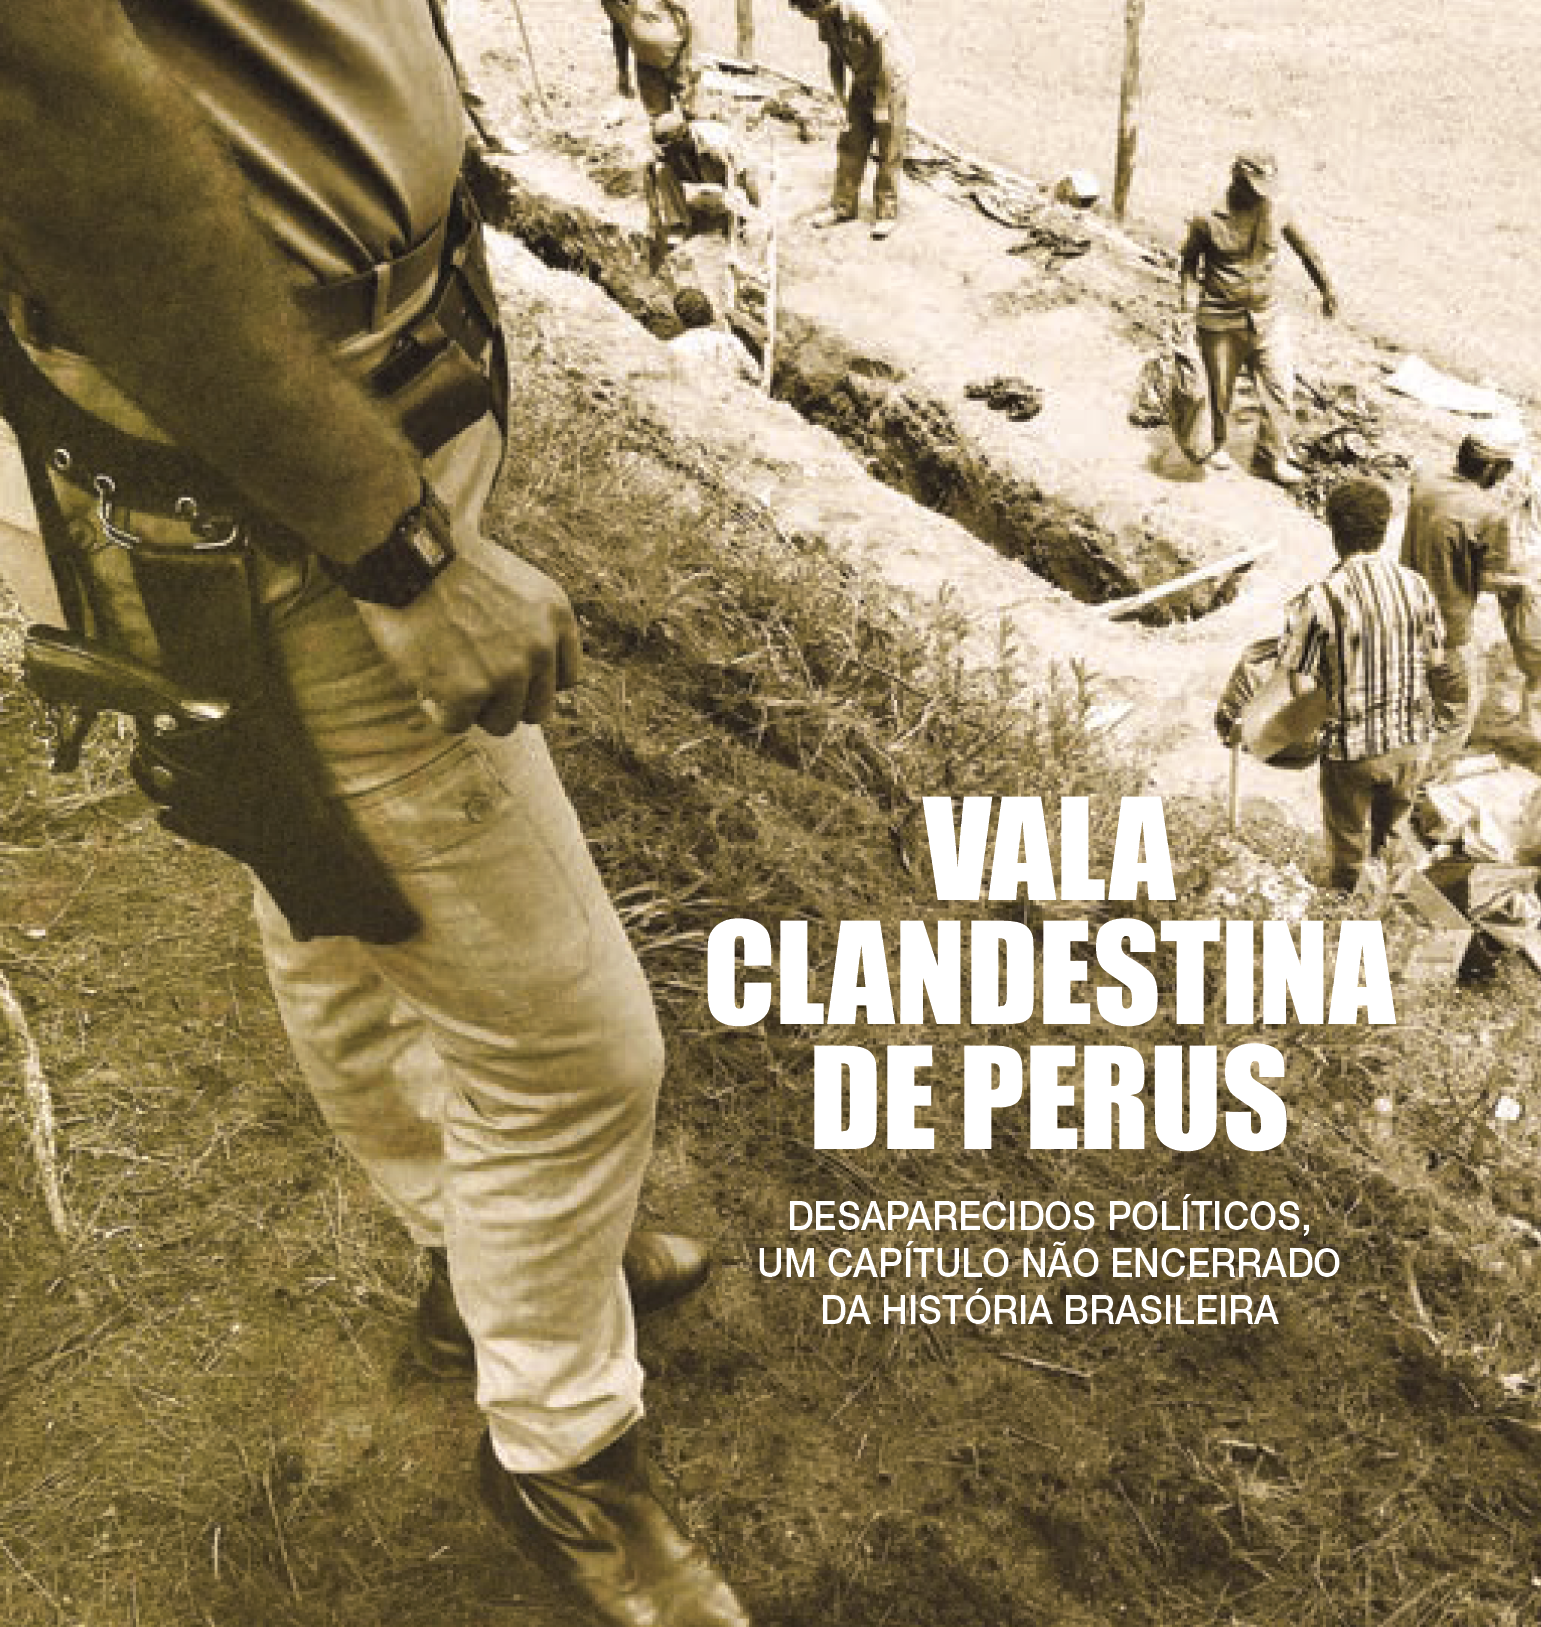 Vala Clandestina de Perus – Desaparecidos políticos: um capítulo não encerrado da história brasileira